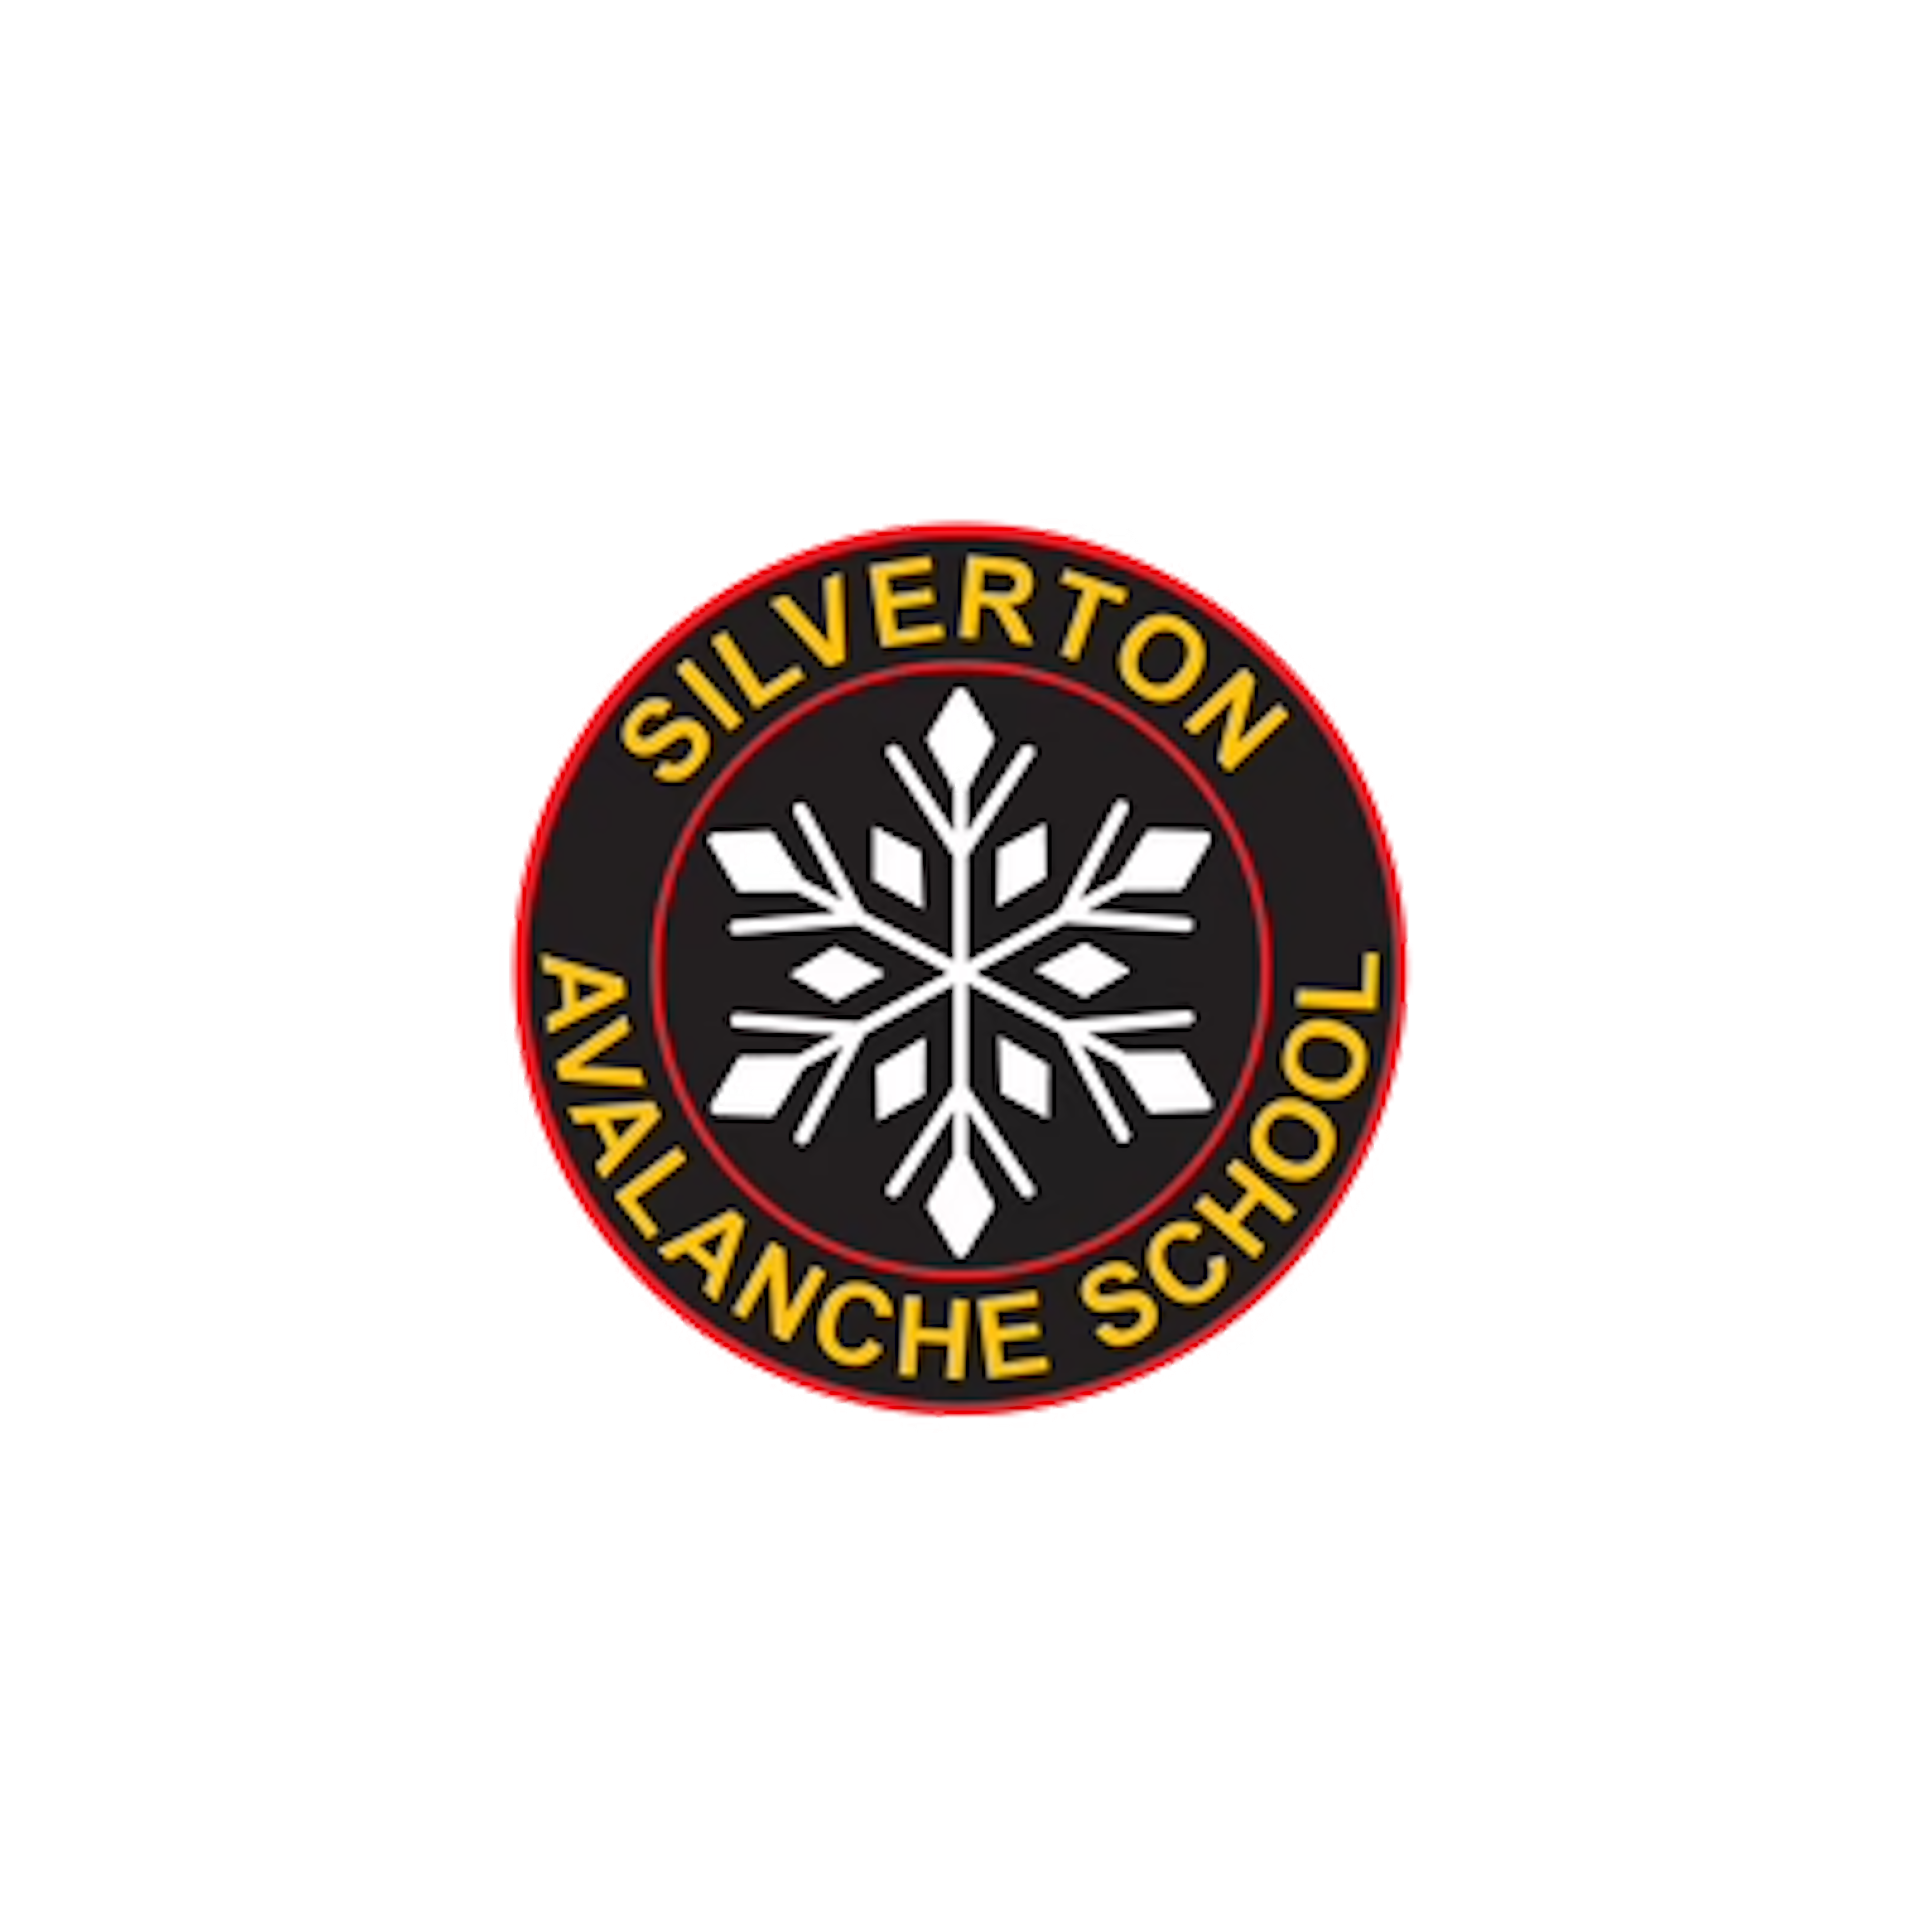 école Silverton avalanche